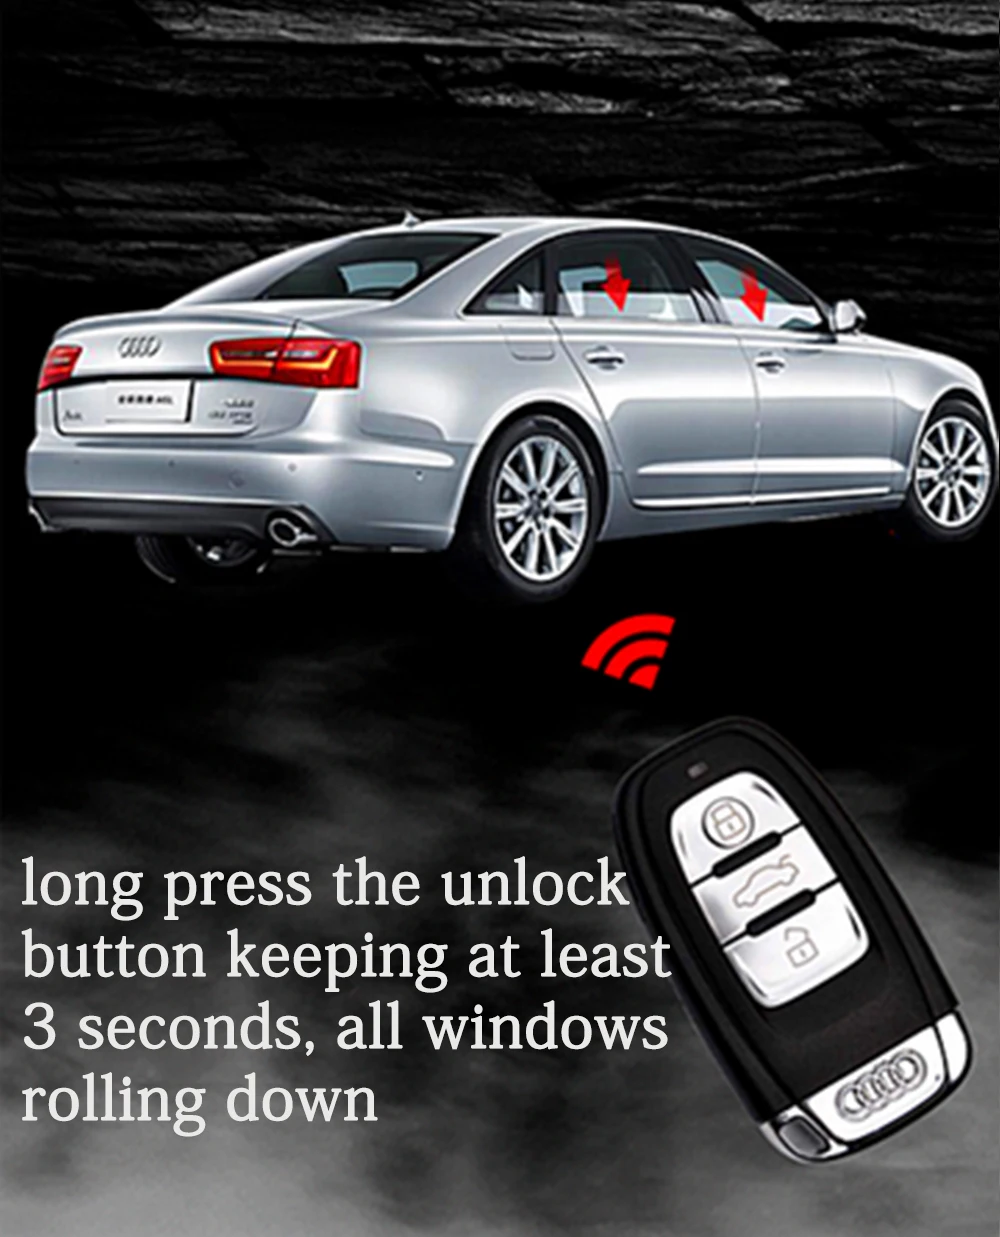 PLUSOBD автосигнализации Системы с удаленного запуска двигателя по мобильному телефону + ключ gps отслеживания для Audi A6 A4 Q5 без провода Cut